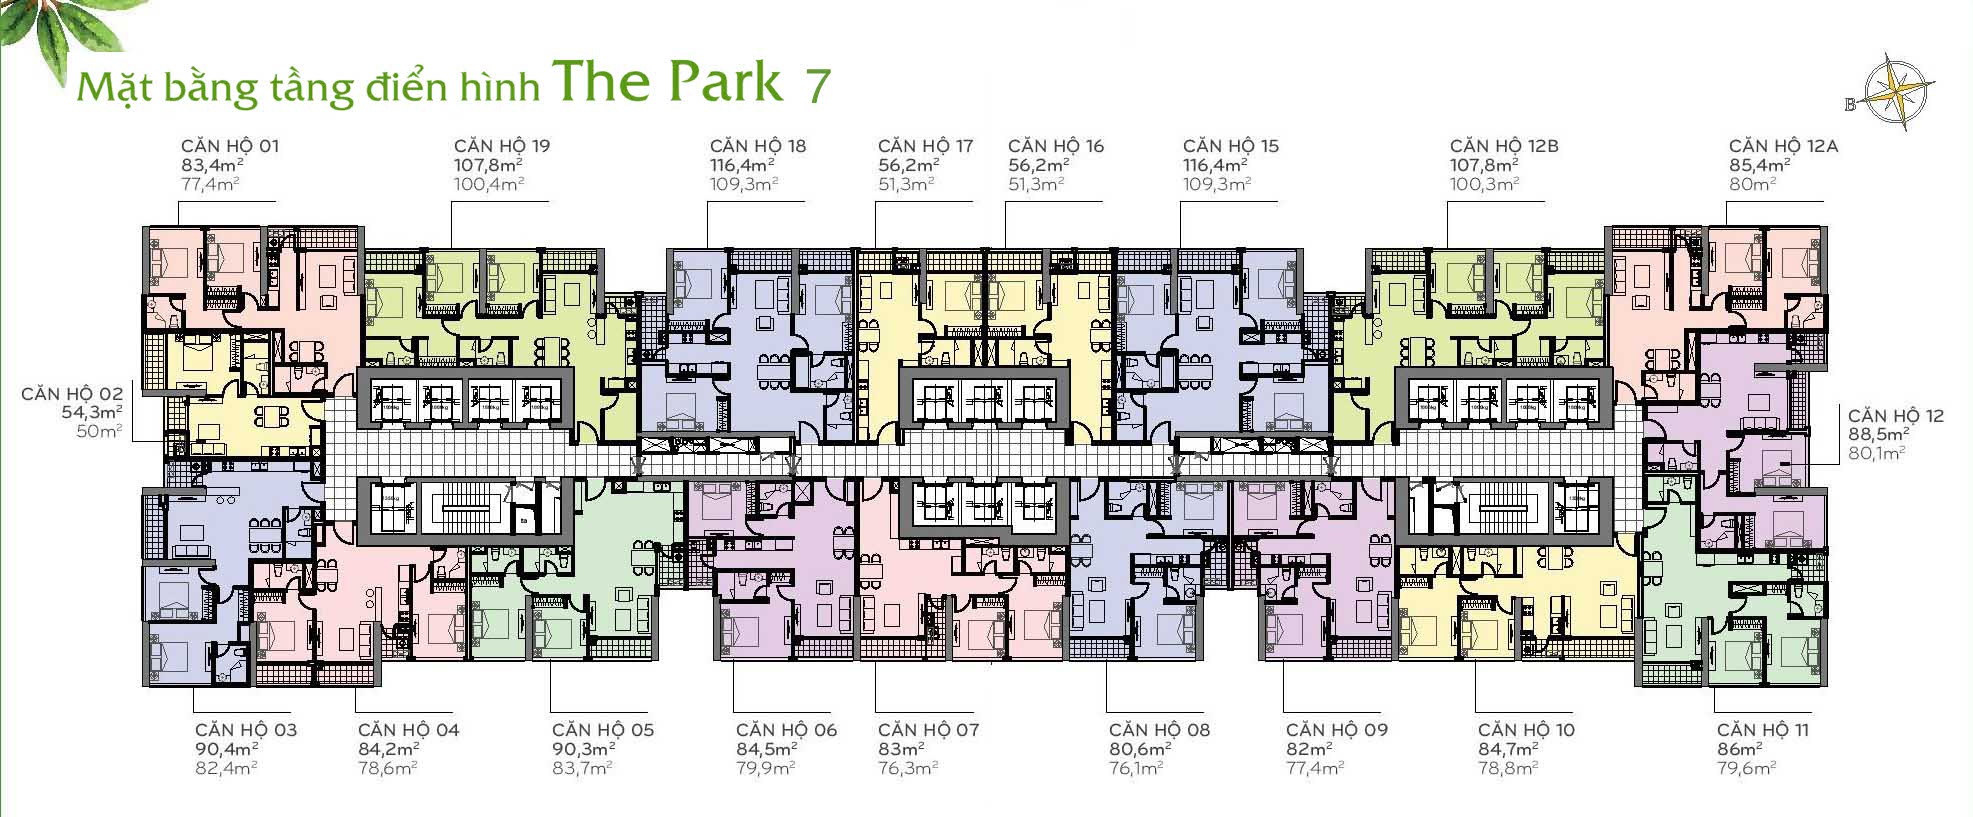 Layout Mặt Bằng Tầng Điển Hình - Tòa The Park 7 - Vinhomes Central Park